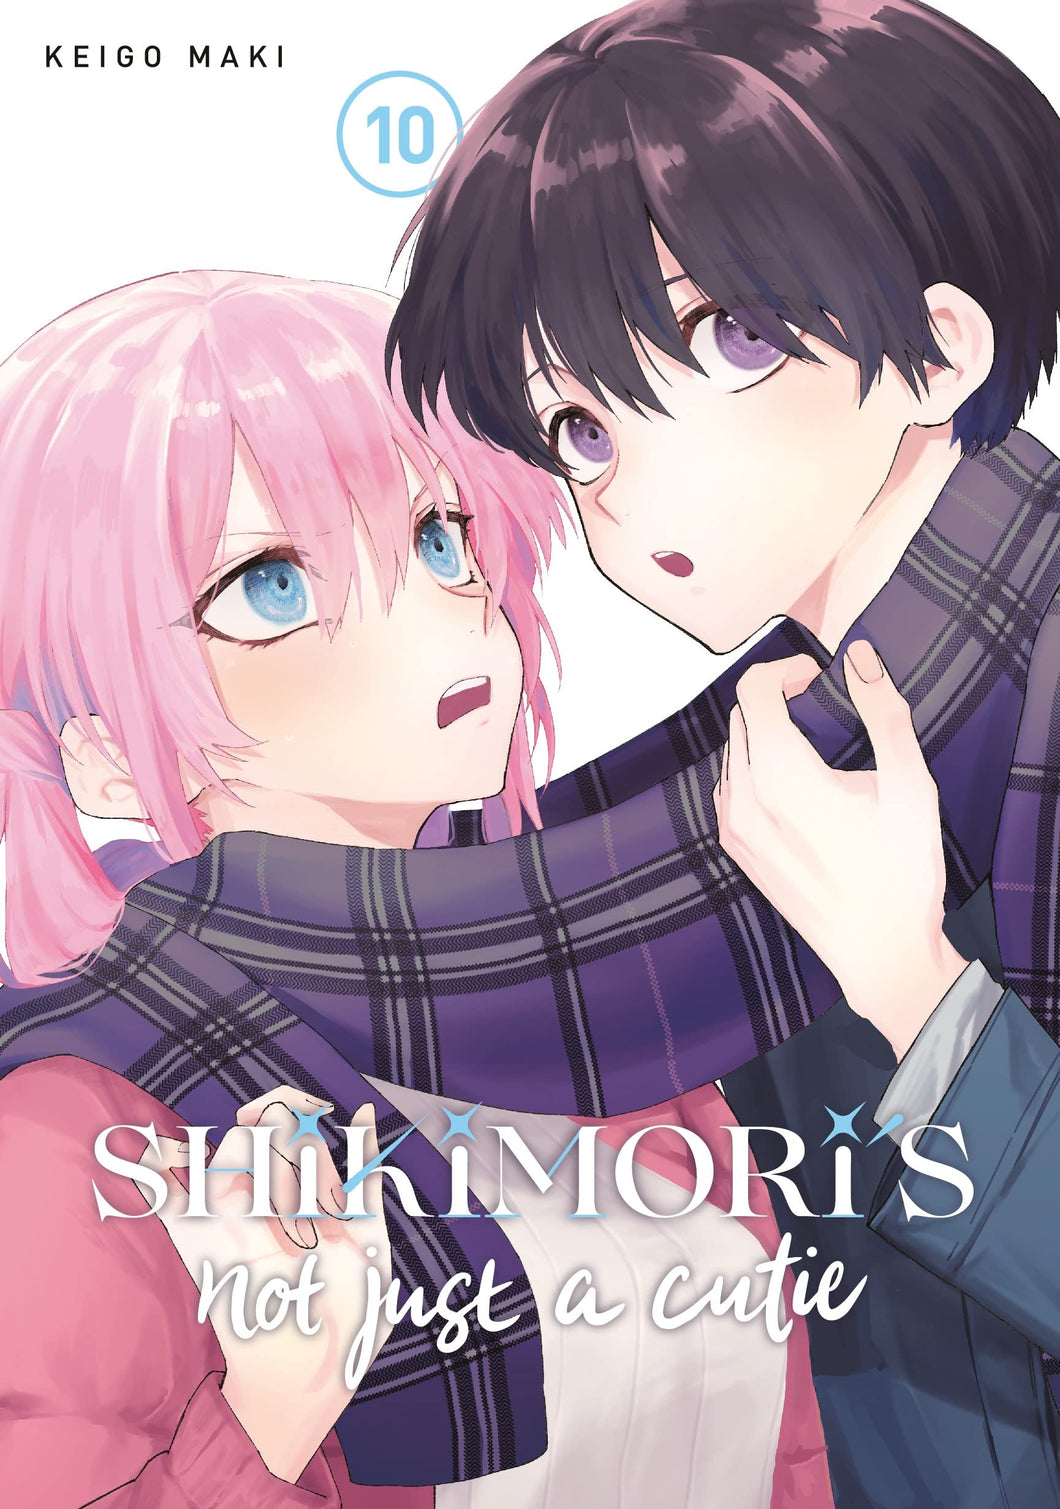 Shikimori's Not Just a Cutie Volume 10